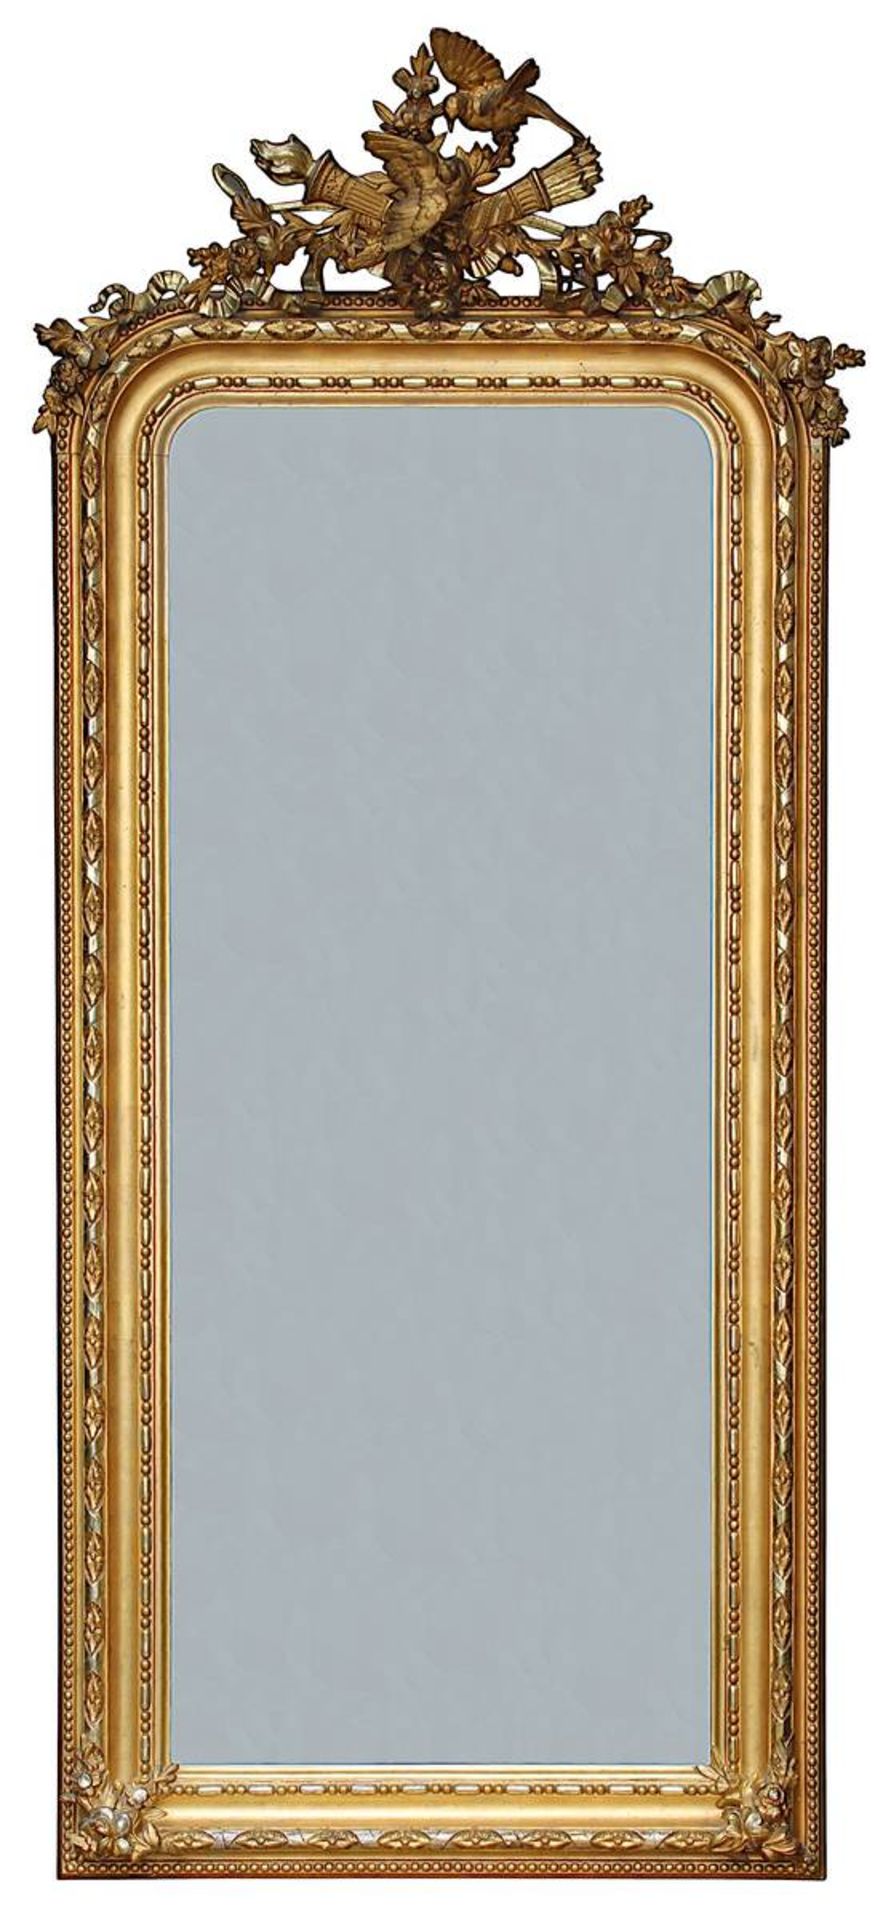 Großer Spiegel, Frankreich um 1860, hochrechteckige Form, am oberen Rand mit abgerundeten Ecken,